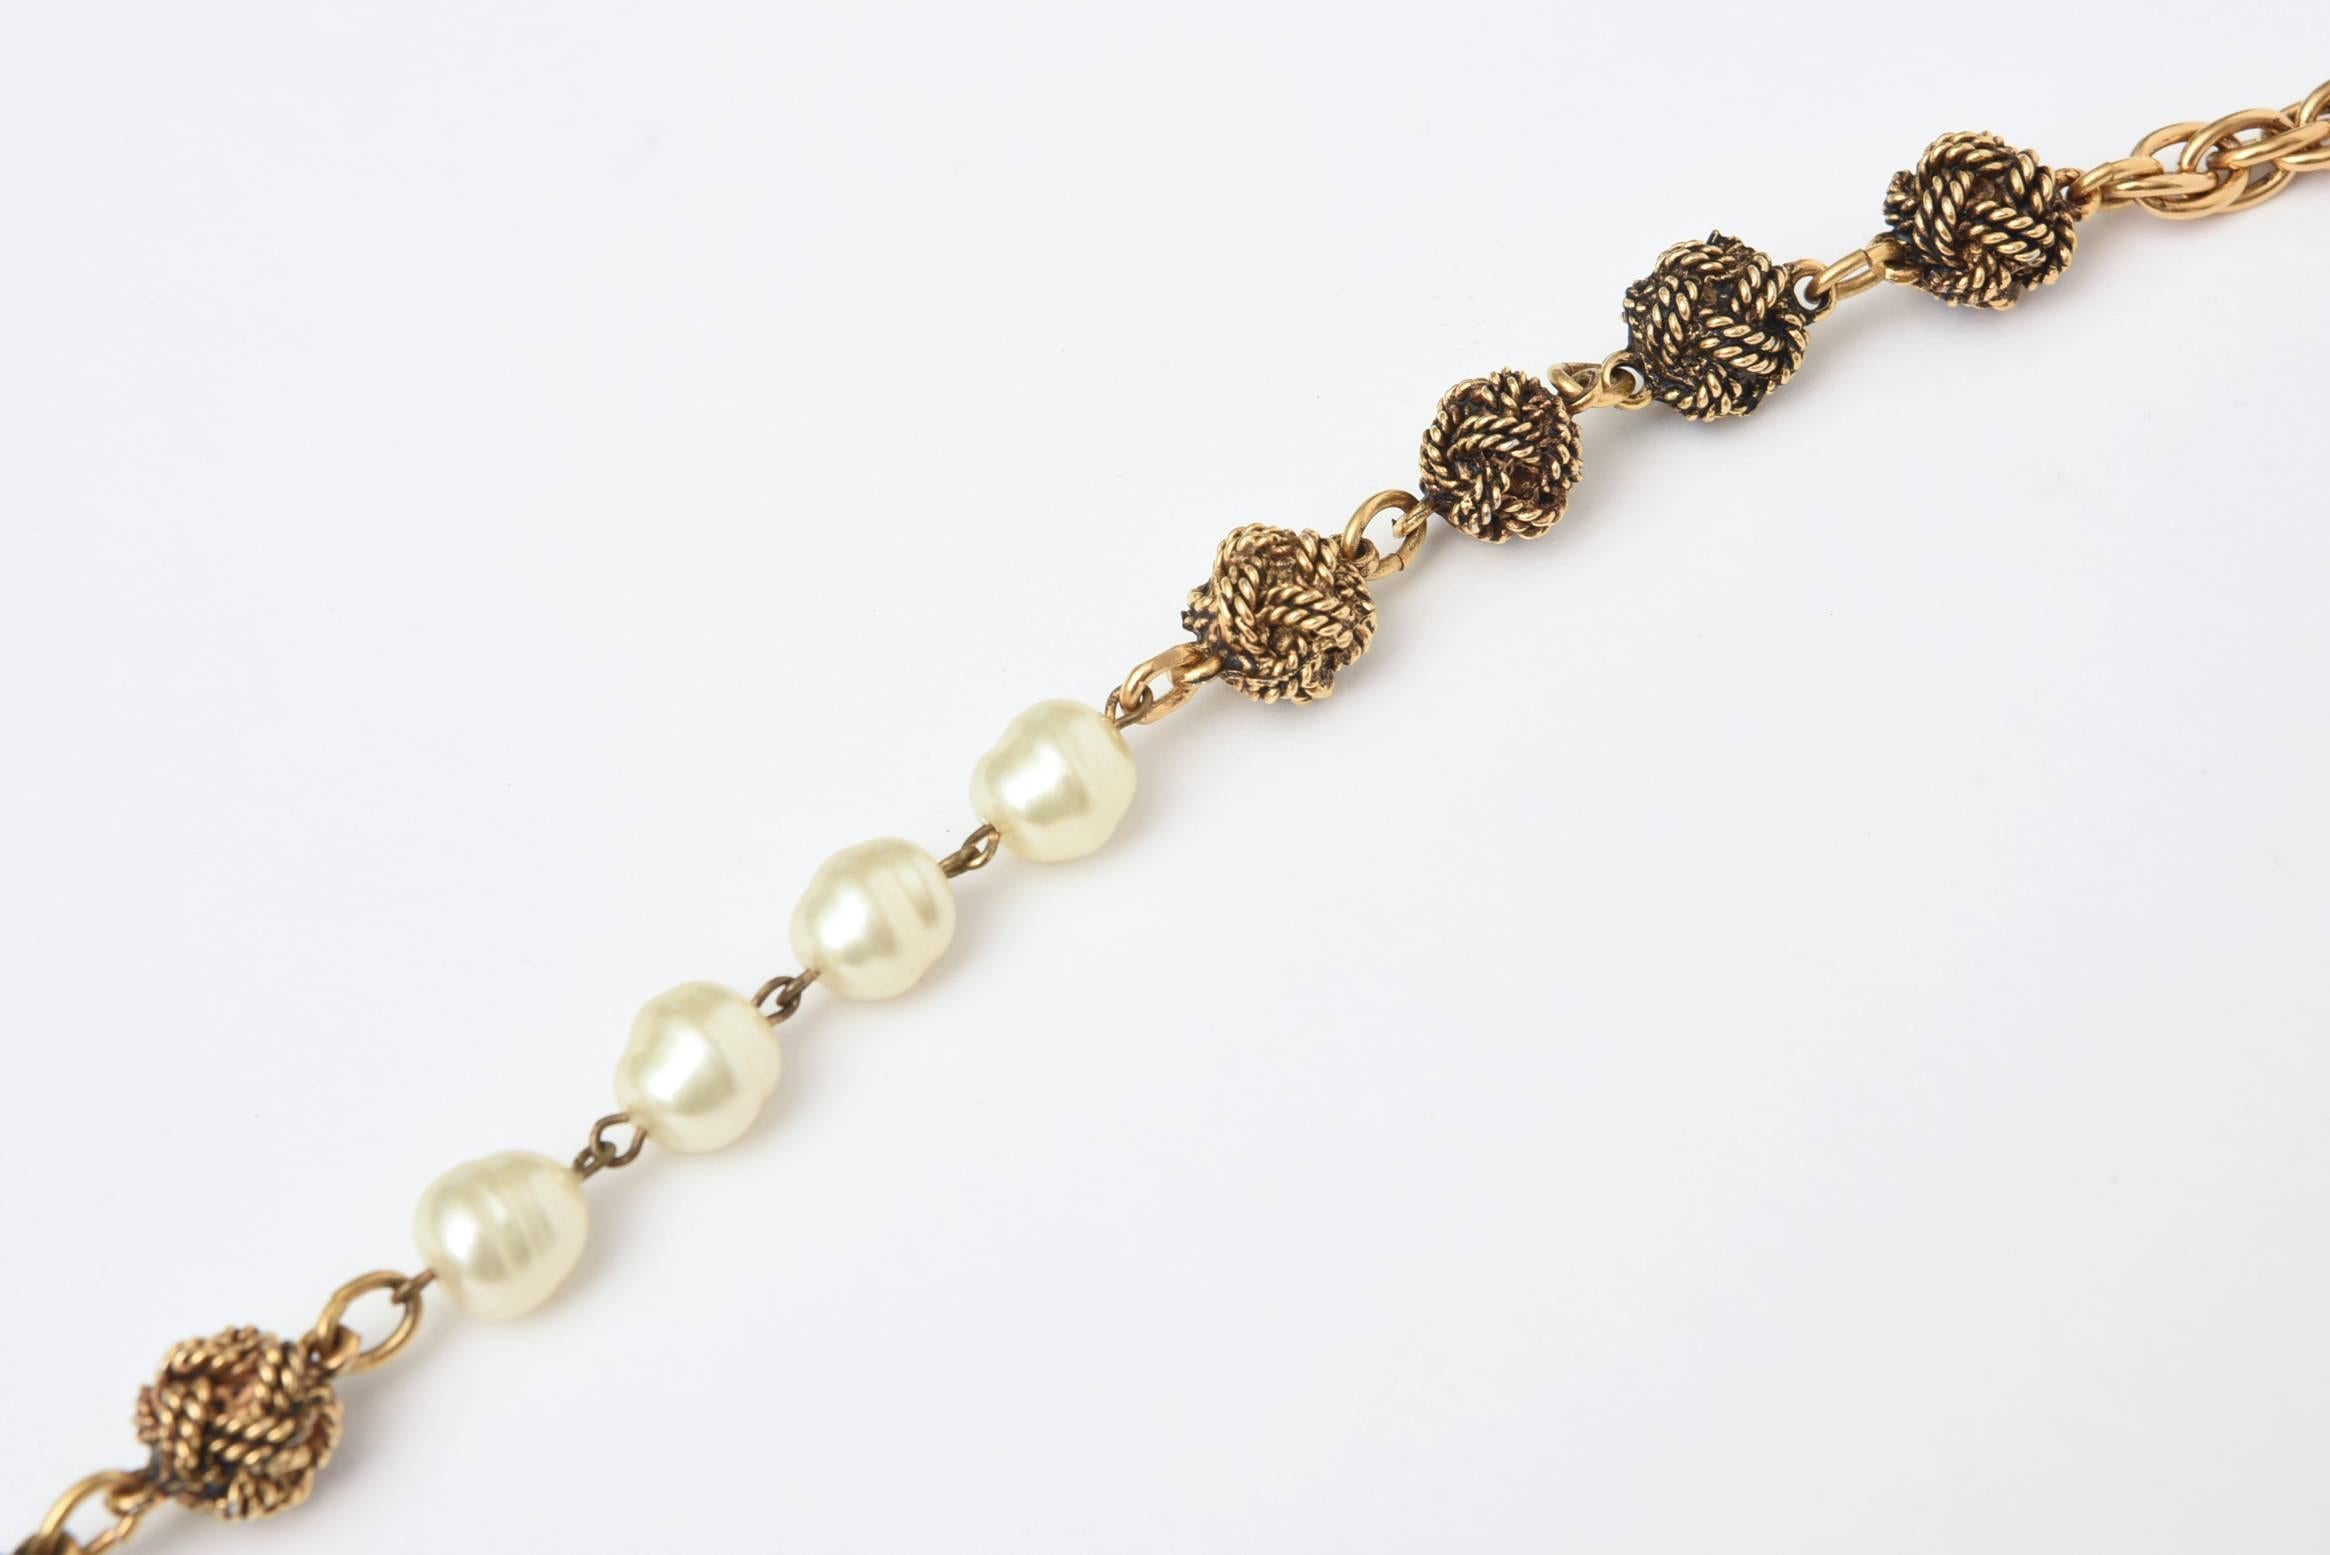 Ce long collier classique et éternel de Chanel présente des nœuds en métal doré plus foncé avec un lien en métal doré plus clair intercalé avec des stations de nœuds d'amour de couleur or intercalées avec des fausses perles et des chaînes Chanel en